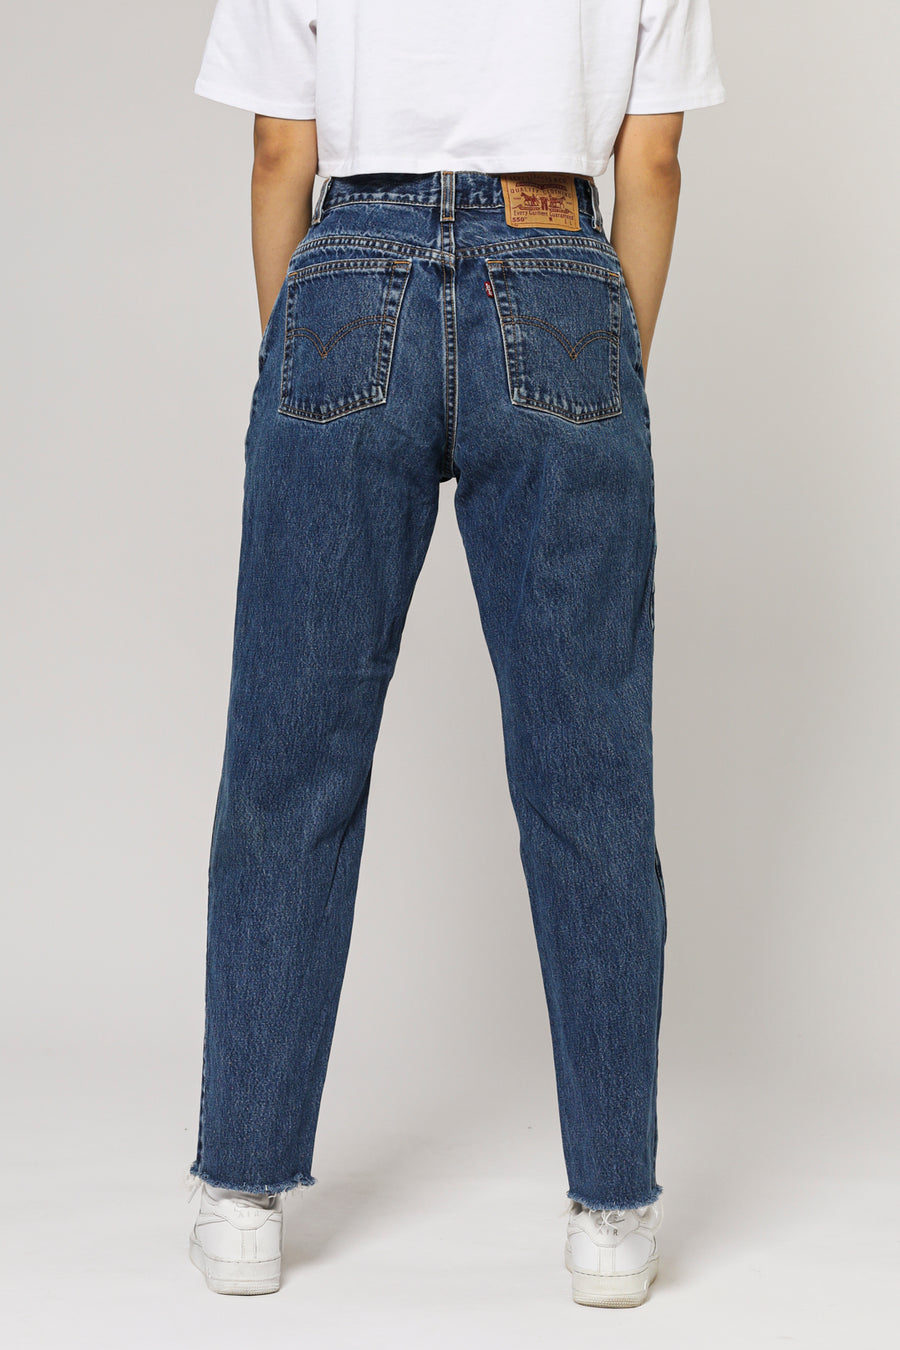 Vintage Levi's Jeans - W30